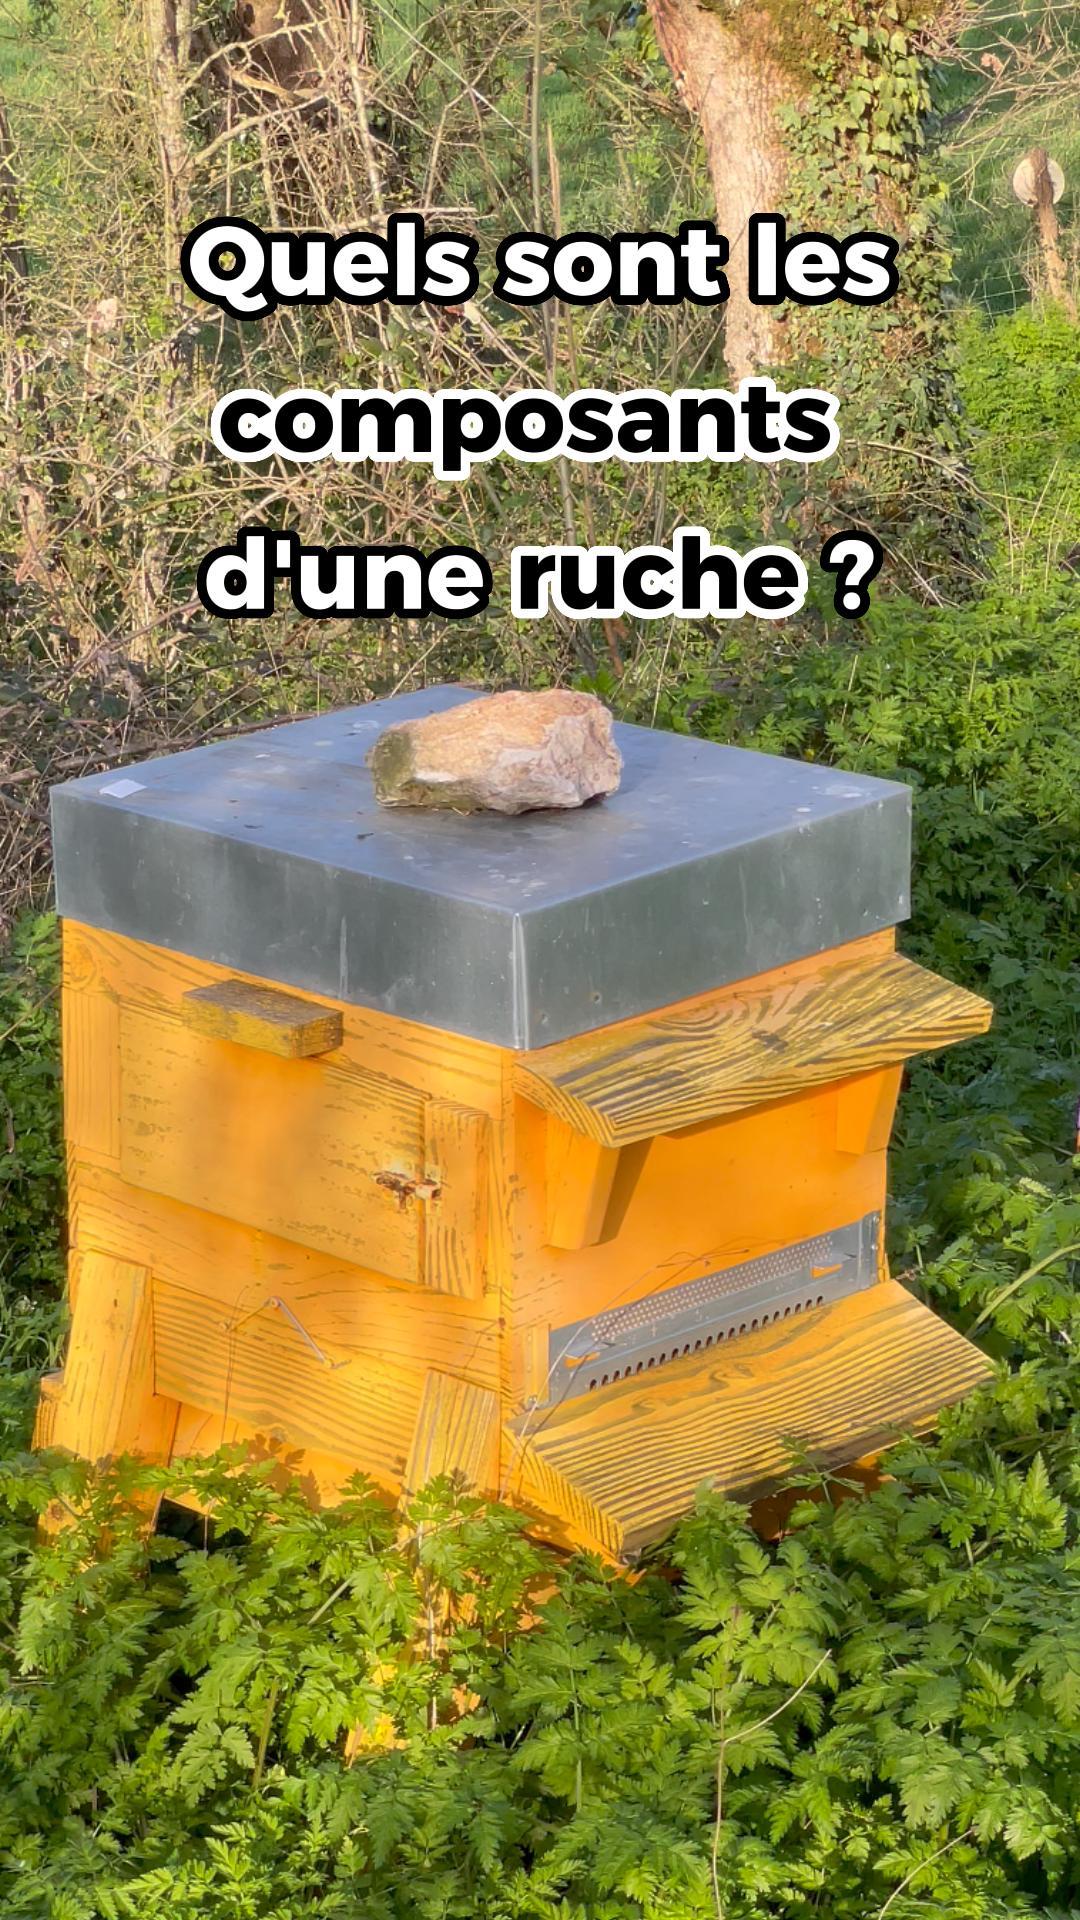 Quels sont les composants d'une ruche ?